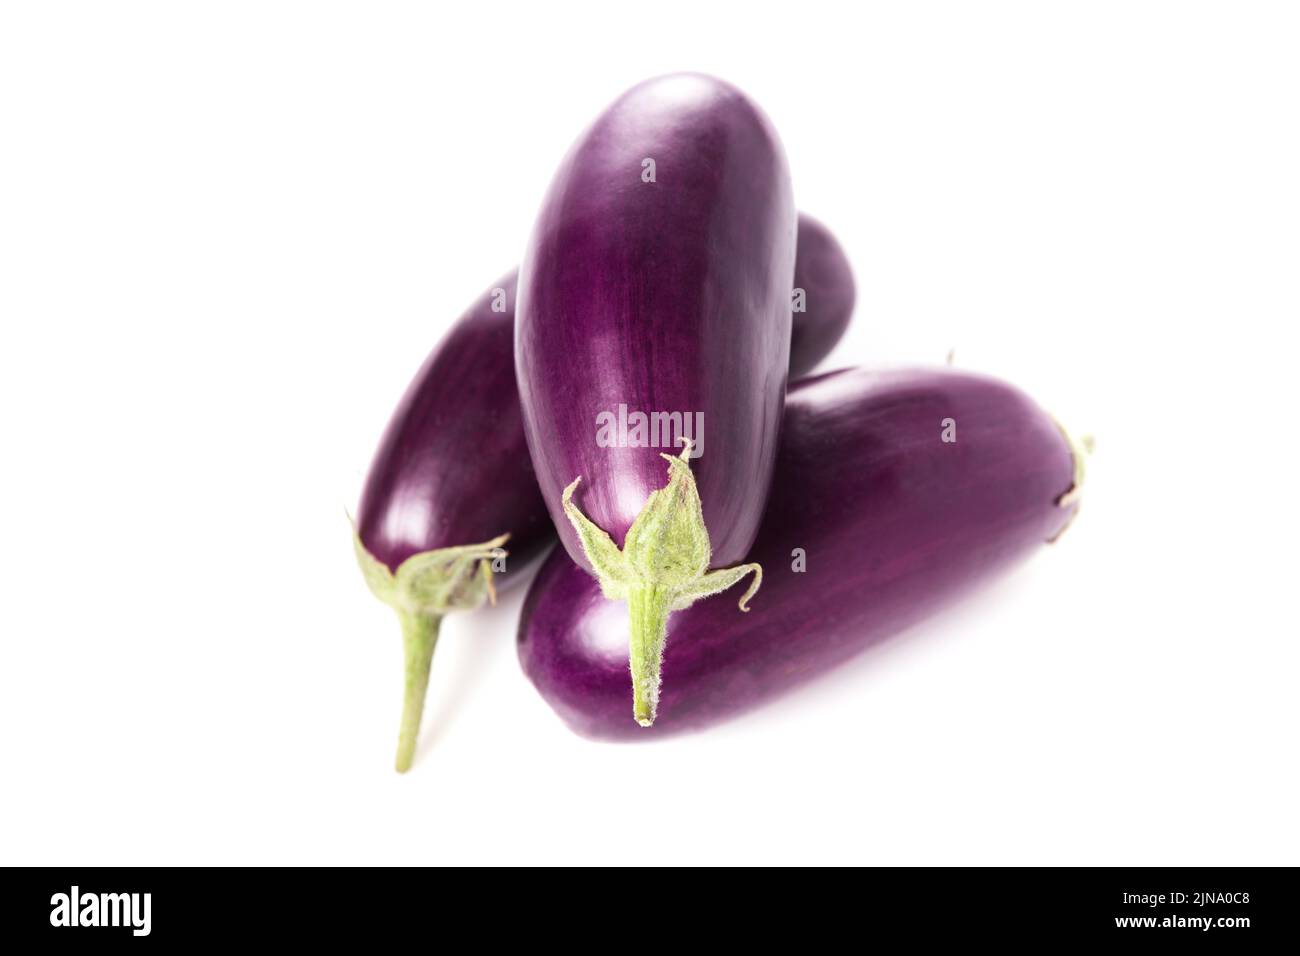 Fresh violet eggplant isolated on white background Stock Photo